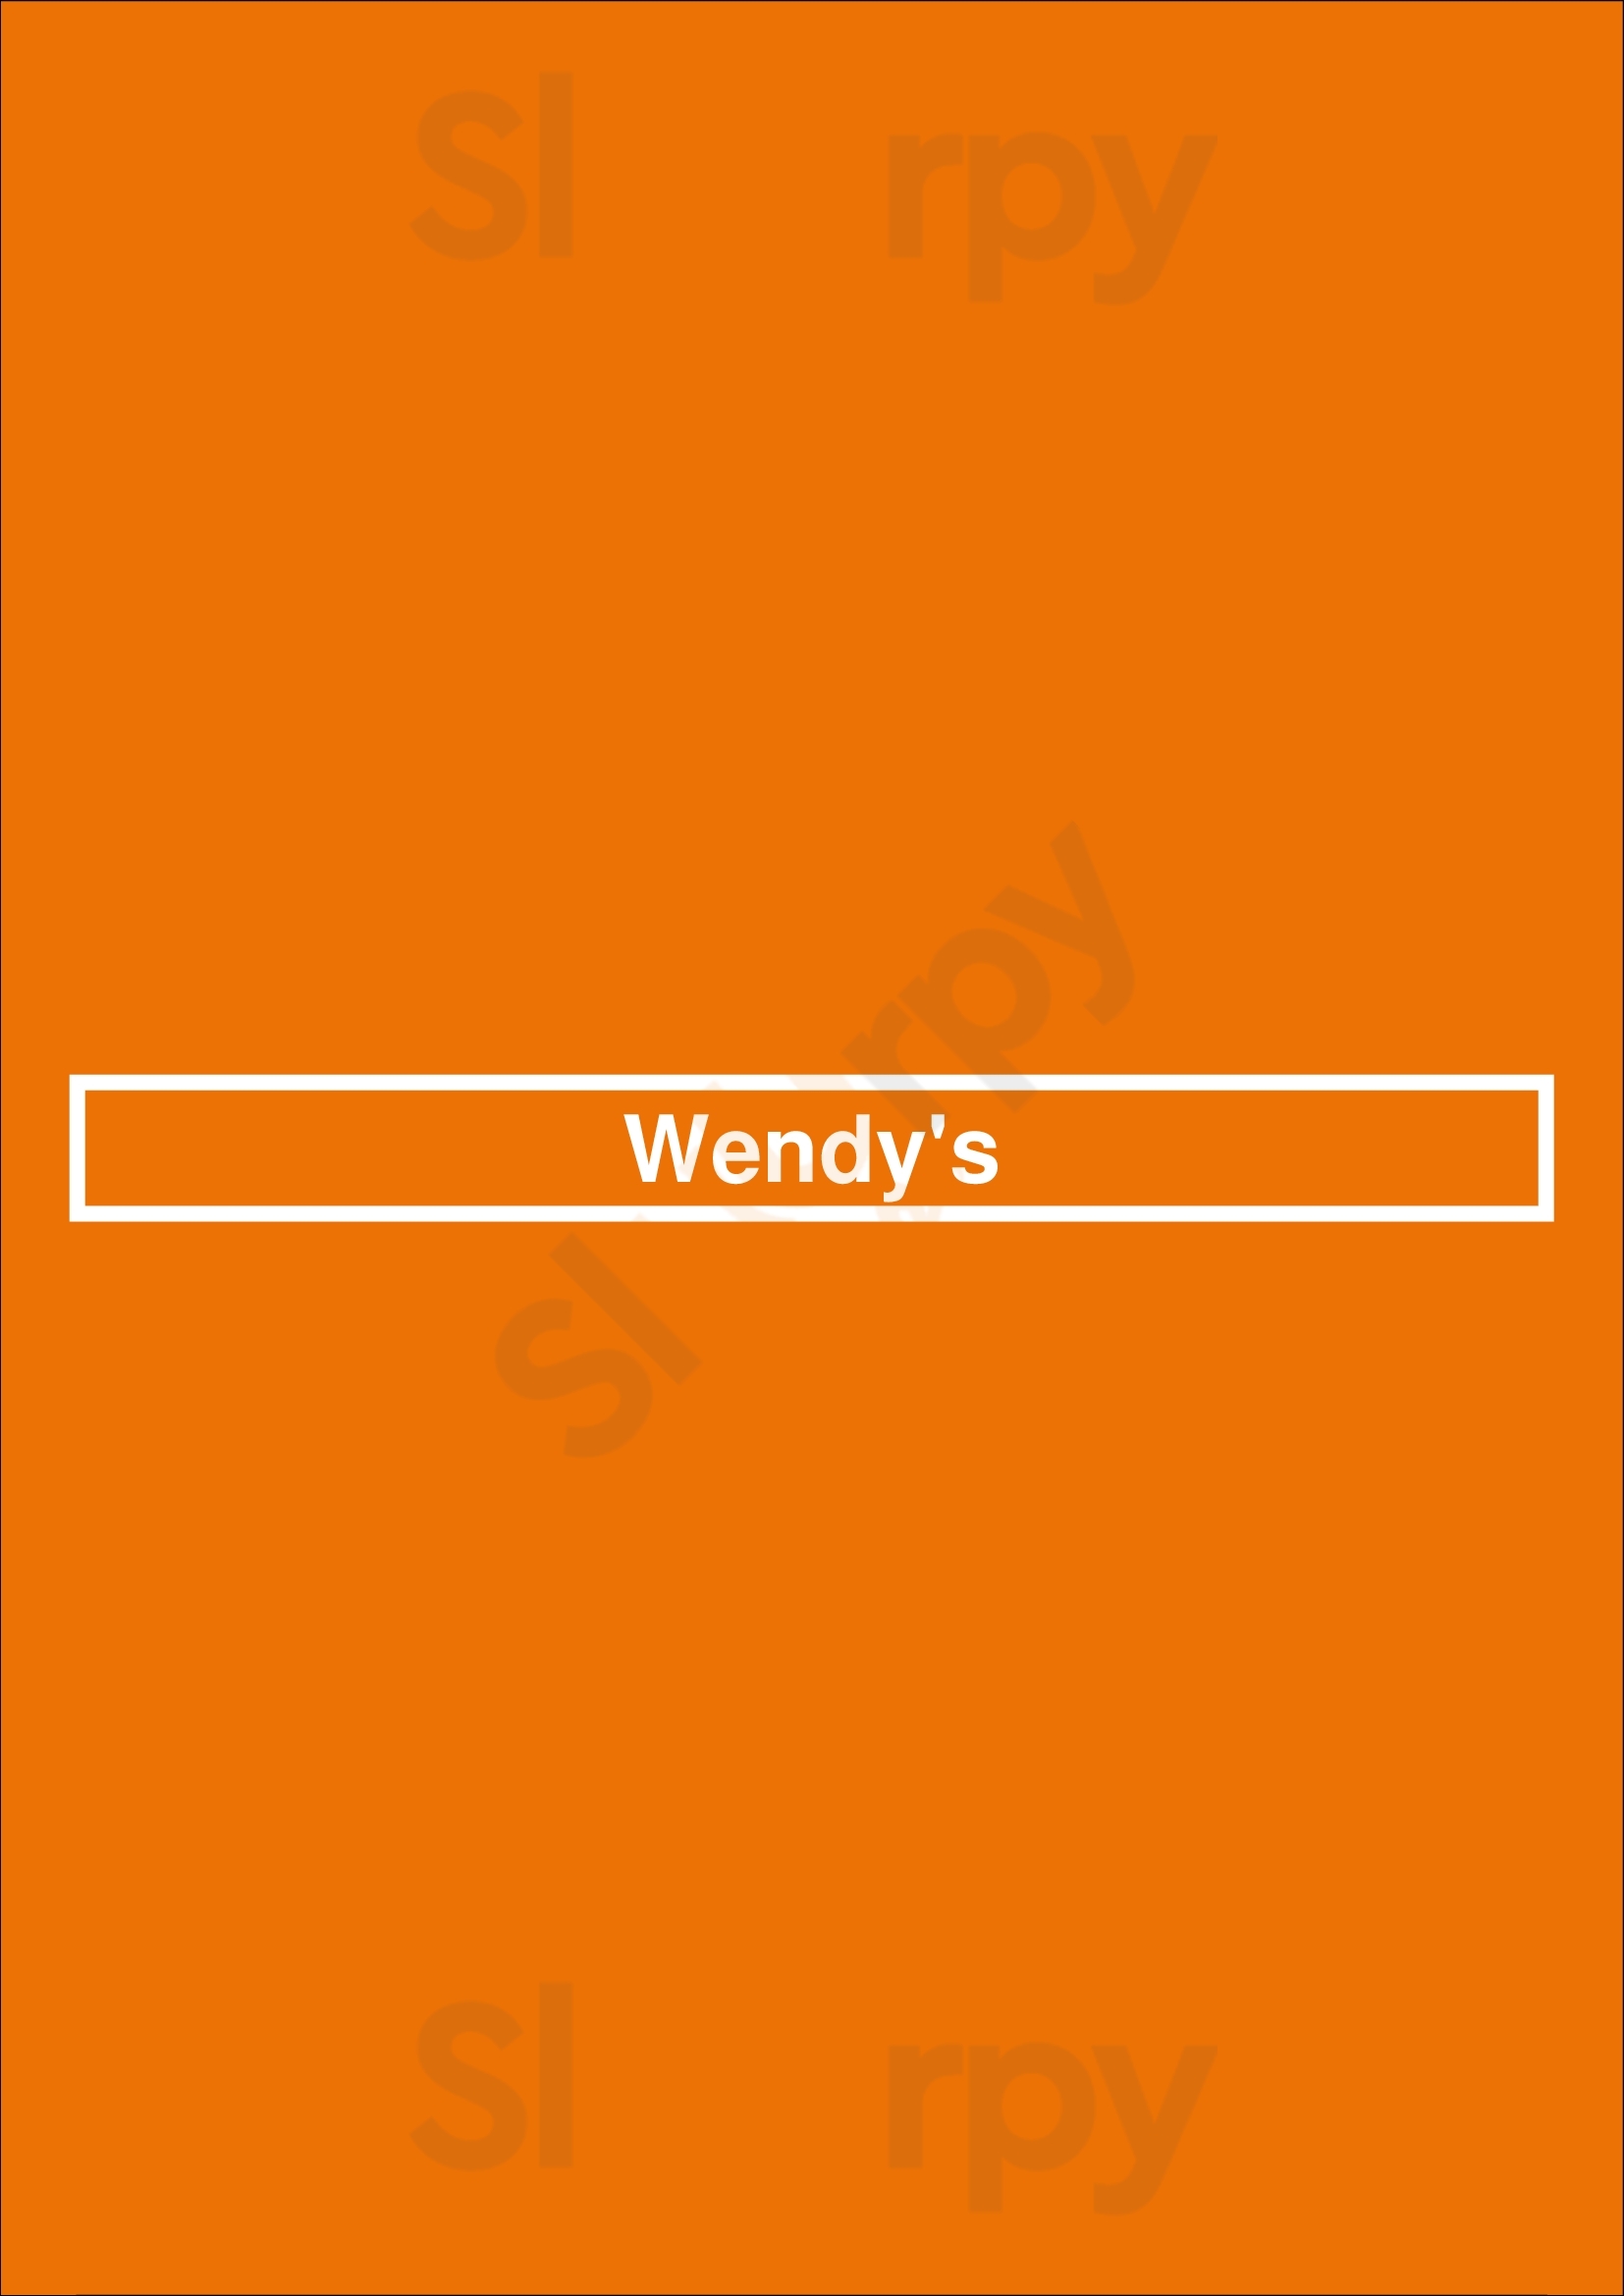 Wendy's Staten Island Menu - 1